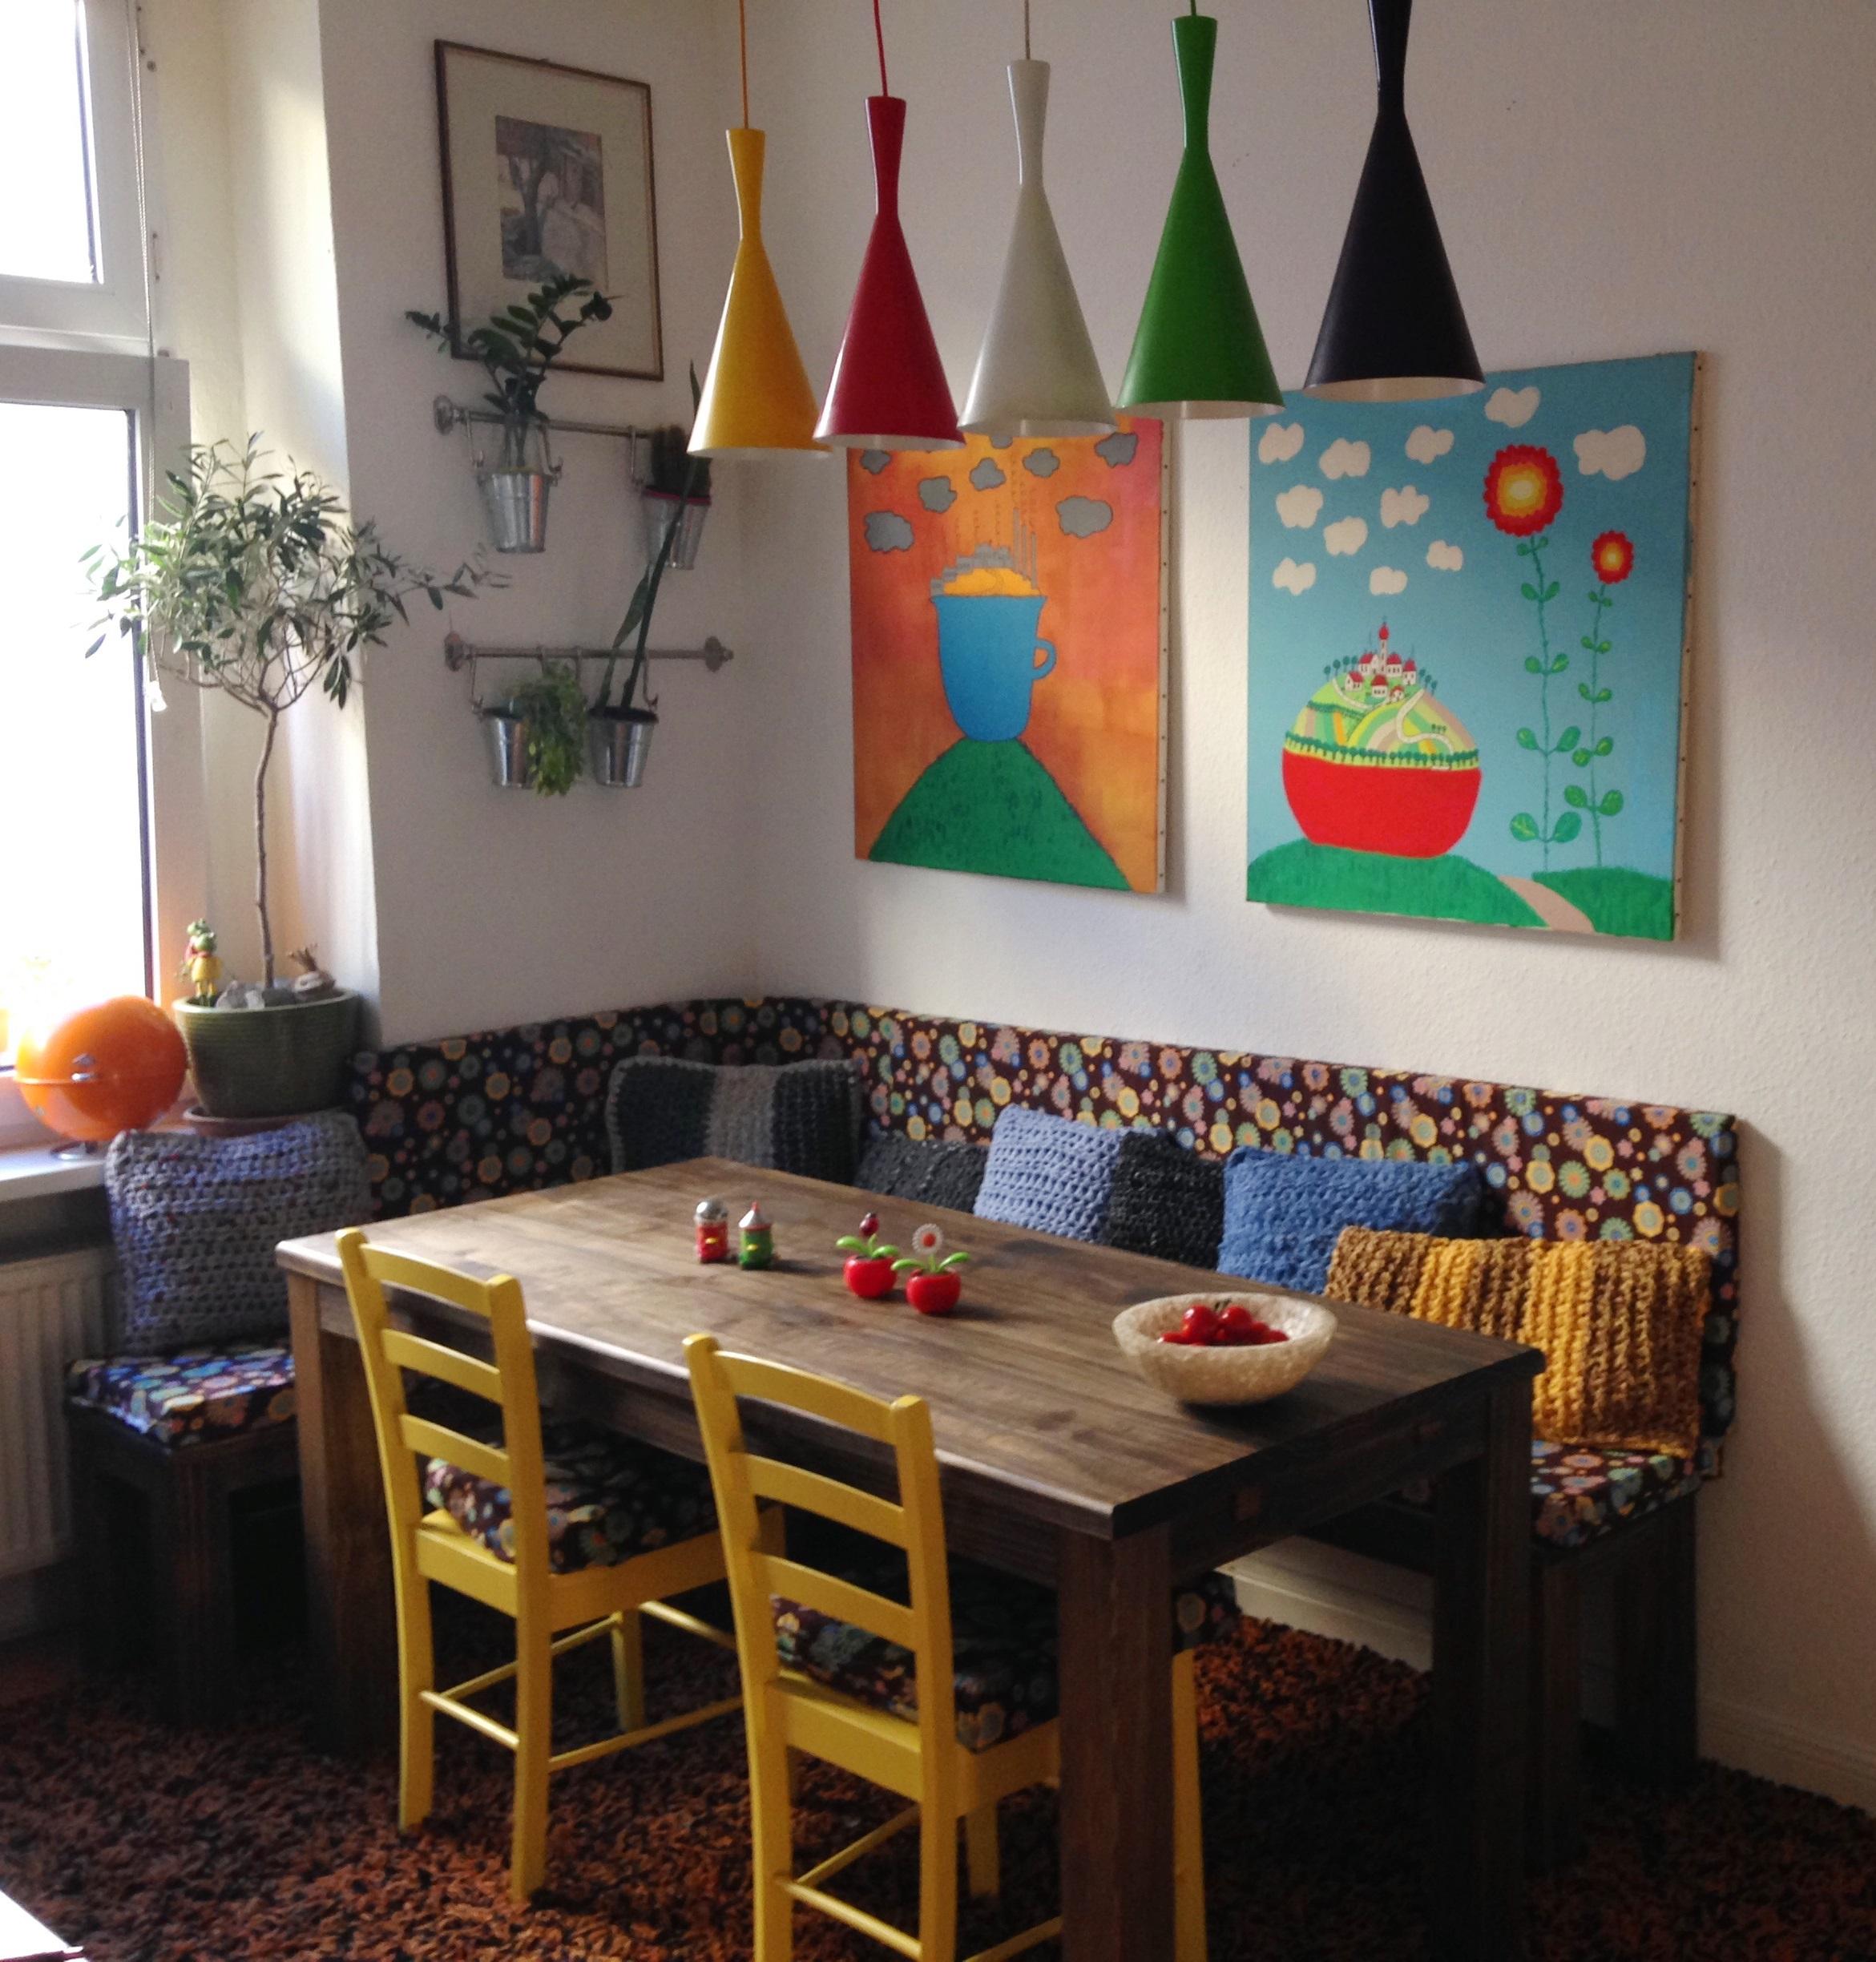 Gemütliche Sitzecke in der Küche #sitzecke ©Kladderadatsch online home